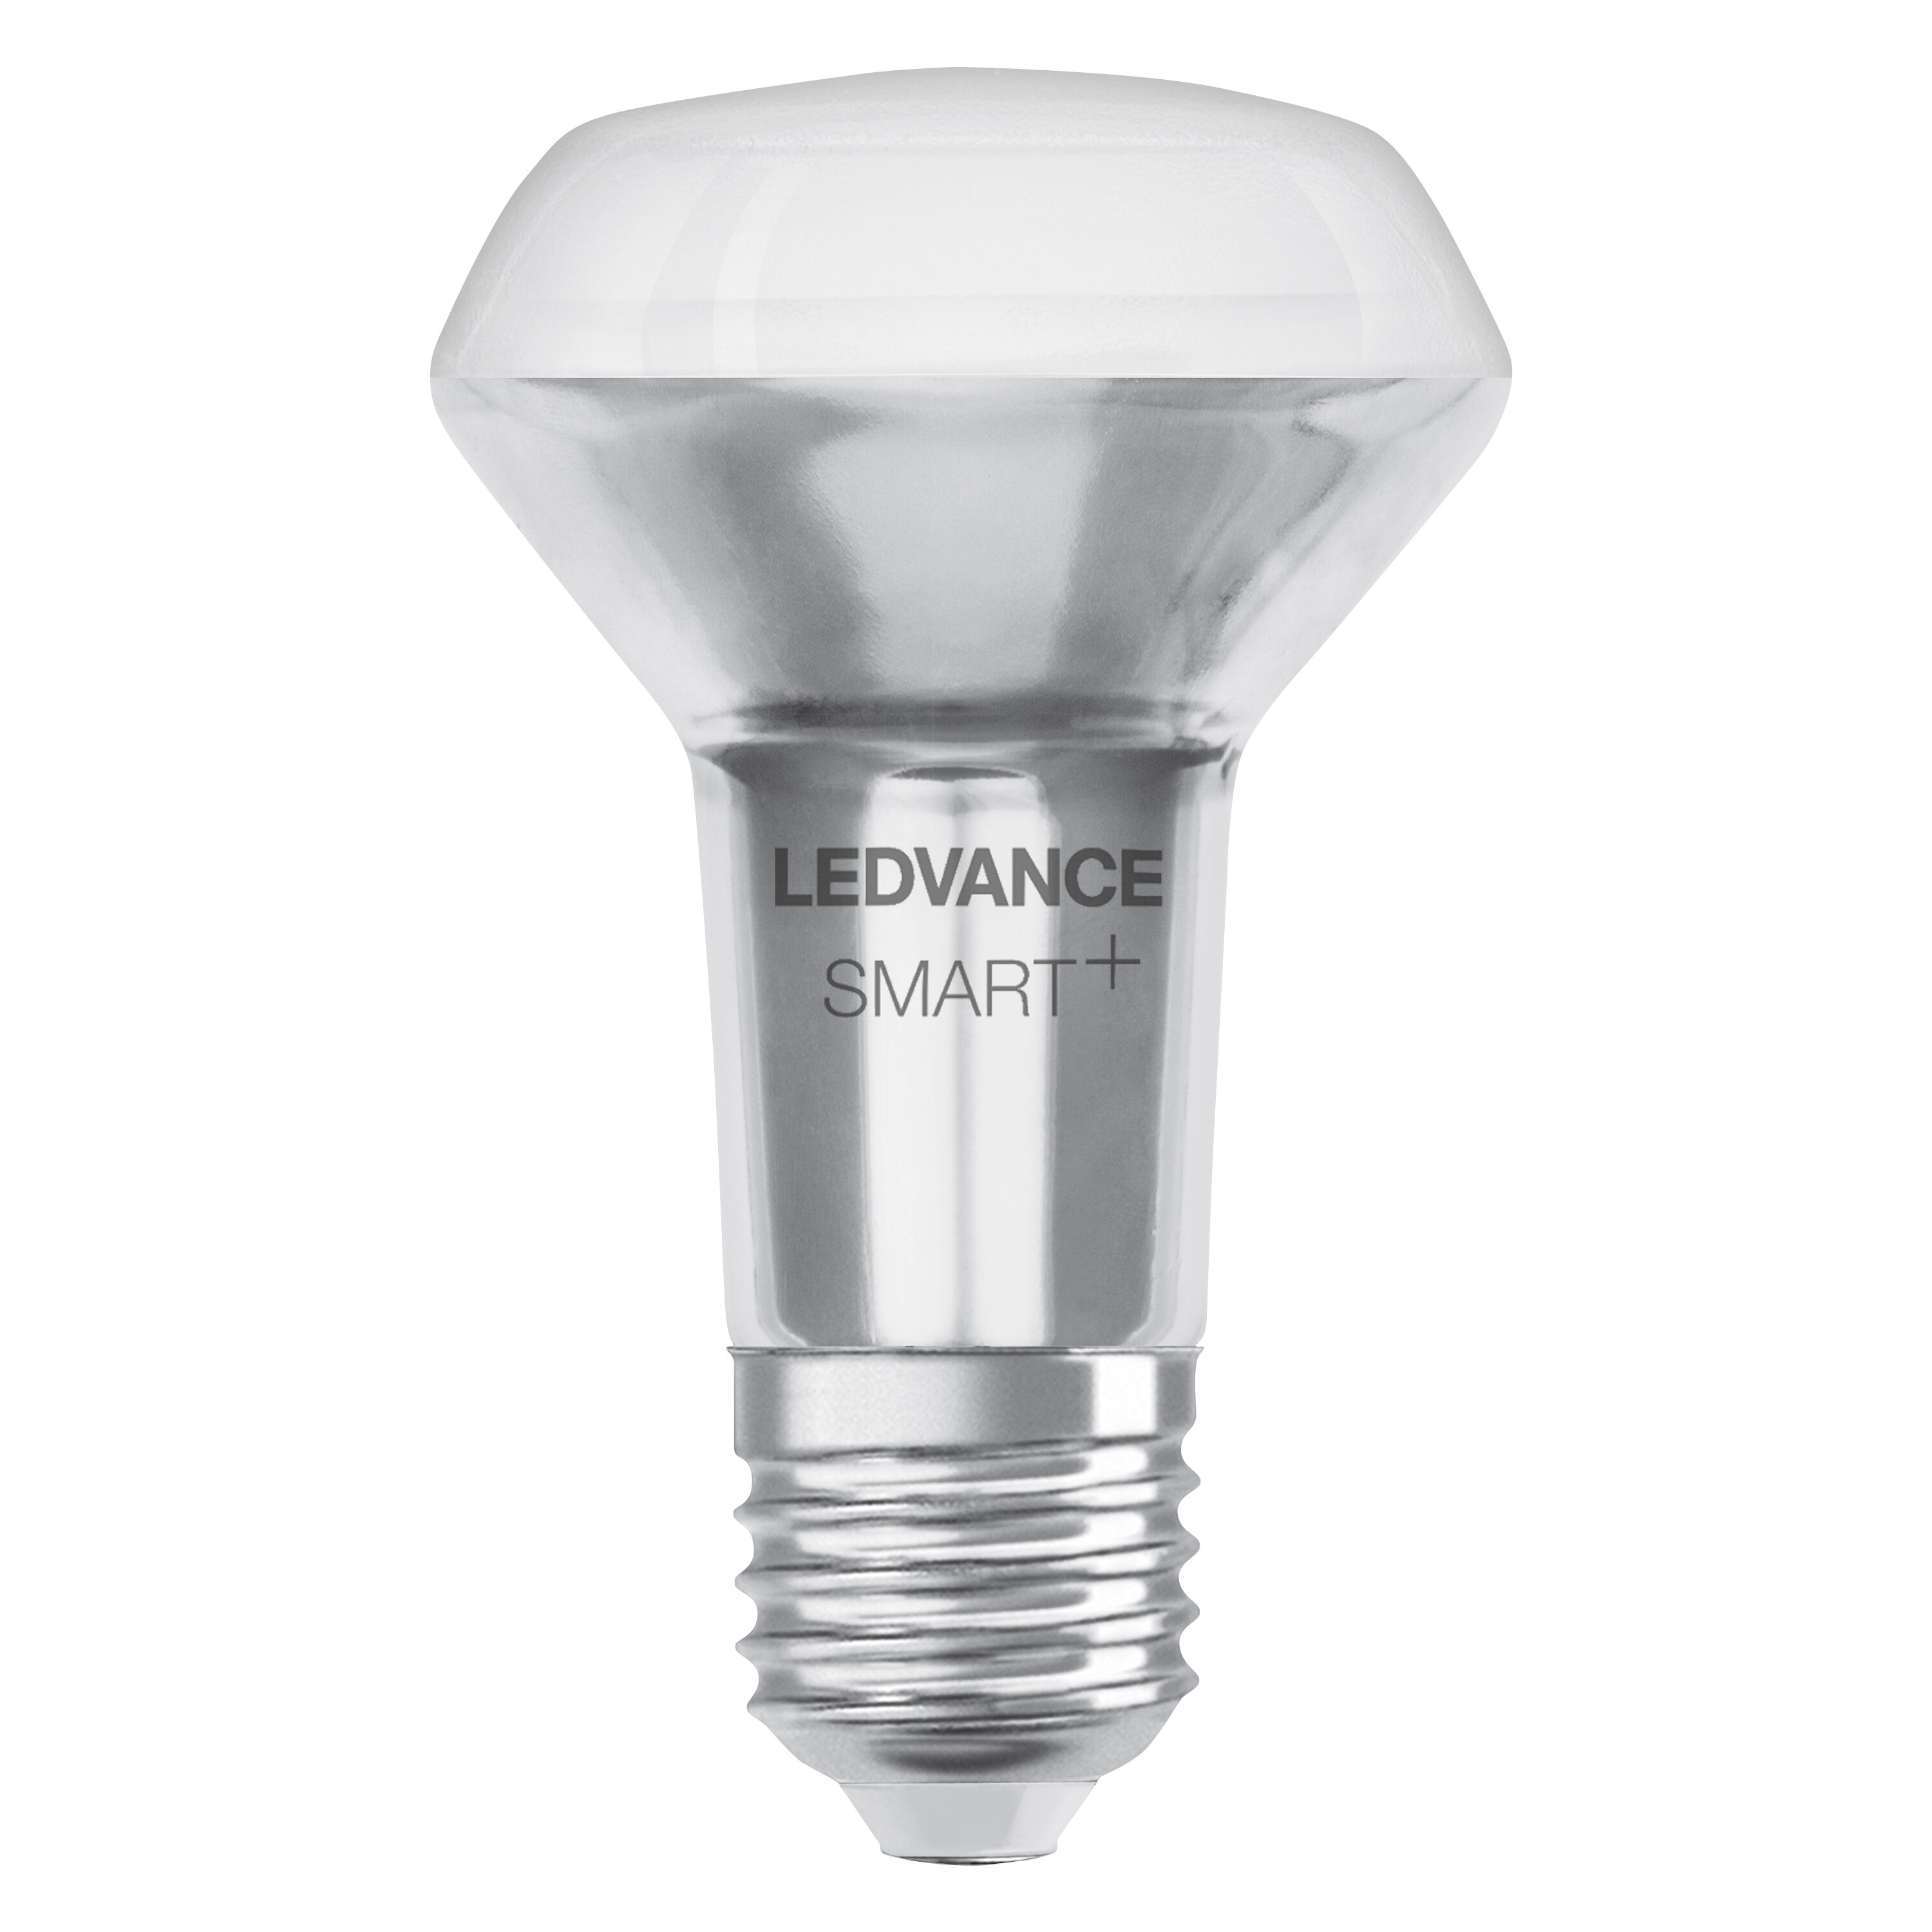 SPOT 60 LEDVANCE E27 CONCENTRA R63 Lichtfarbe Multicolor änderbar SMART+ Multicolor 6W LED Lampe